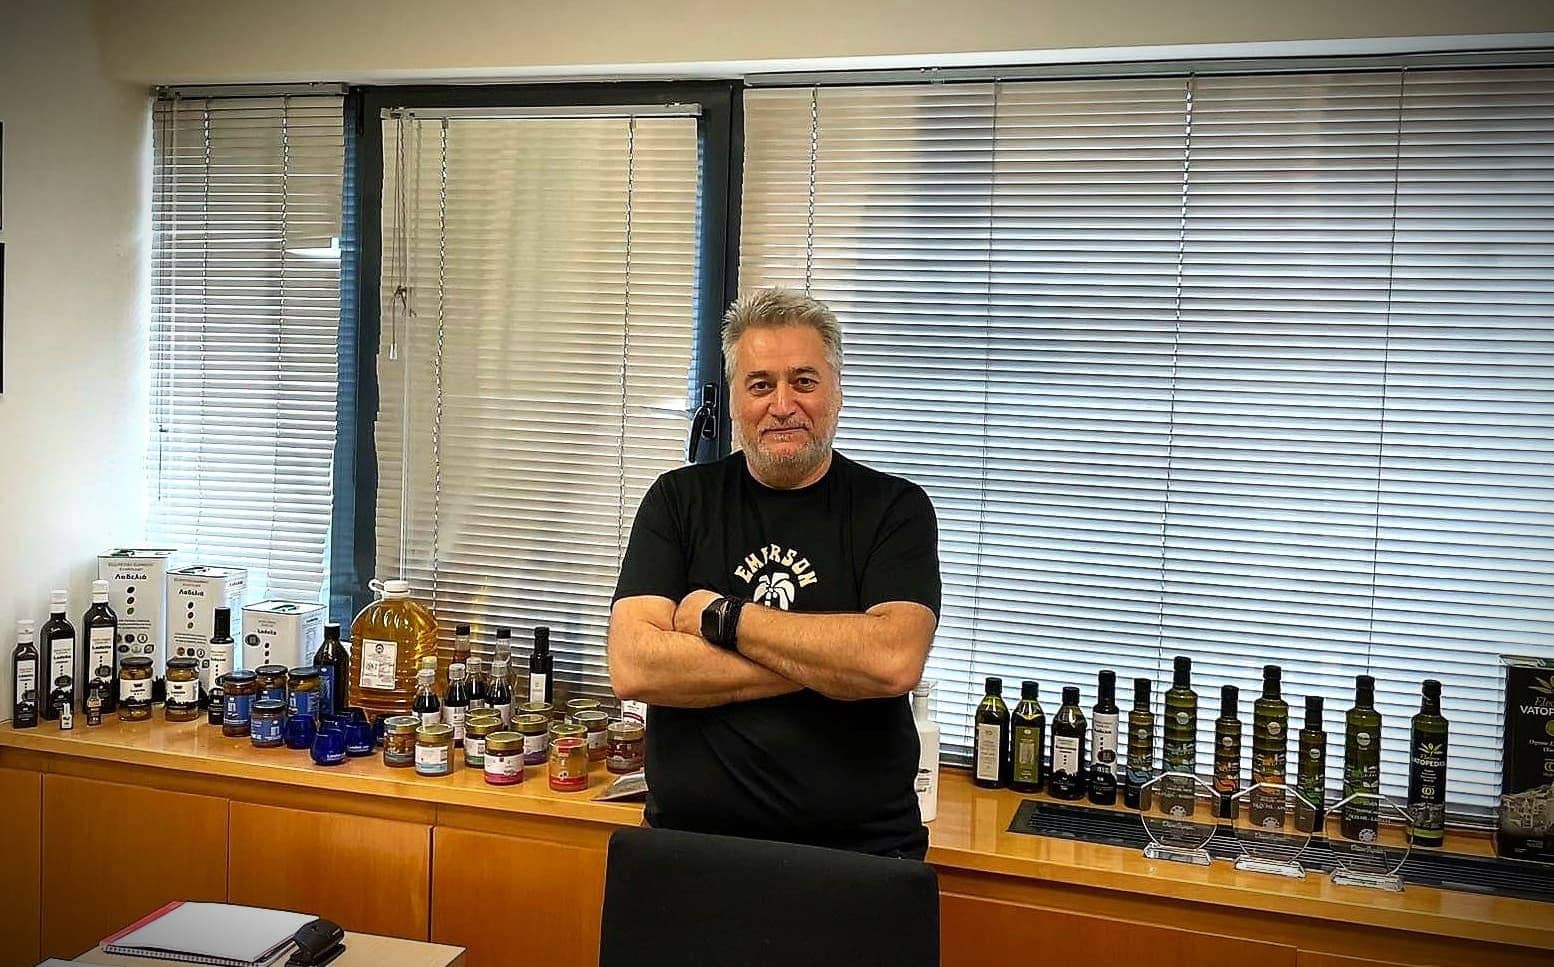 europa-profile-die-beste-olivenölproduktion-preisgekrönter-griechischer-produzent-schaut-ost-olivenöl-zeiten